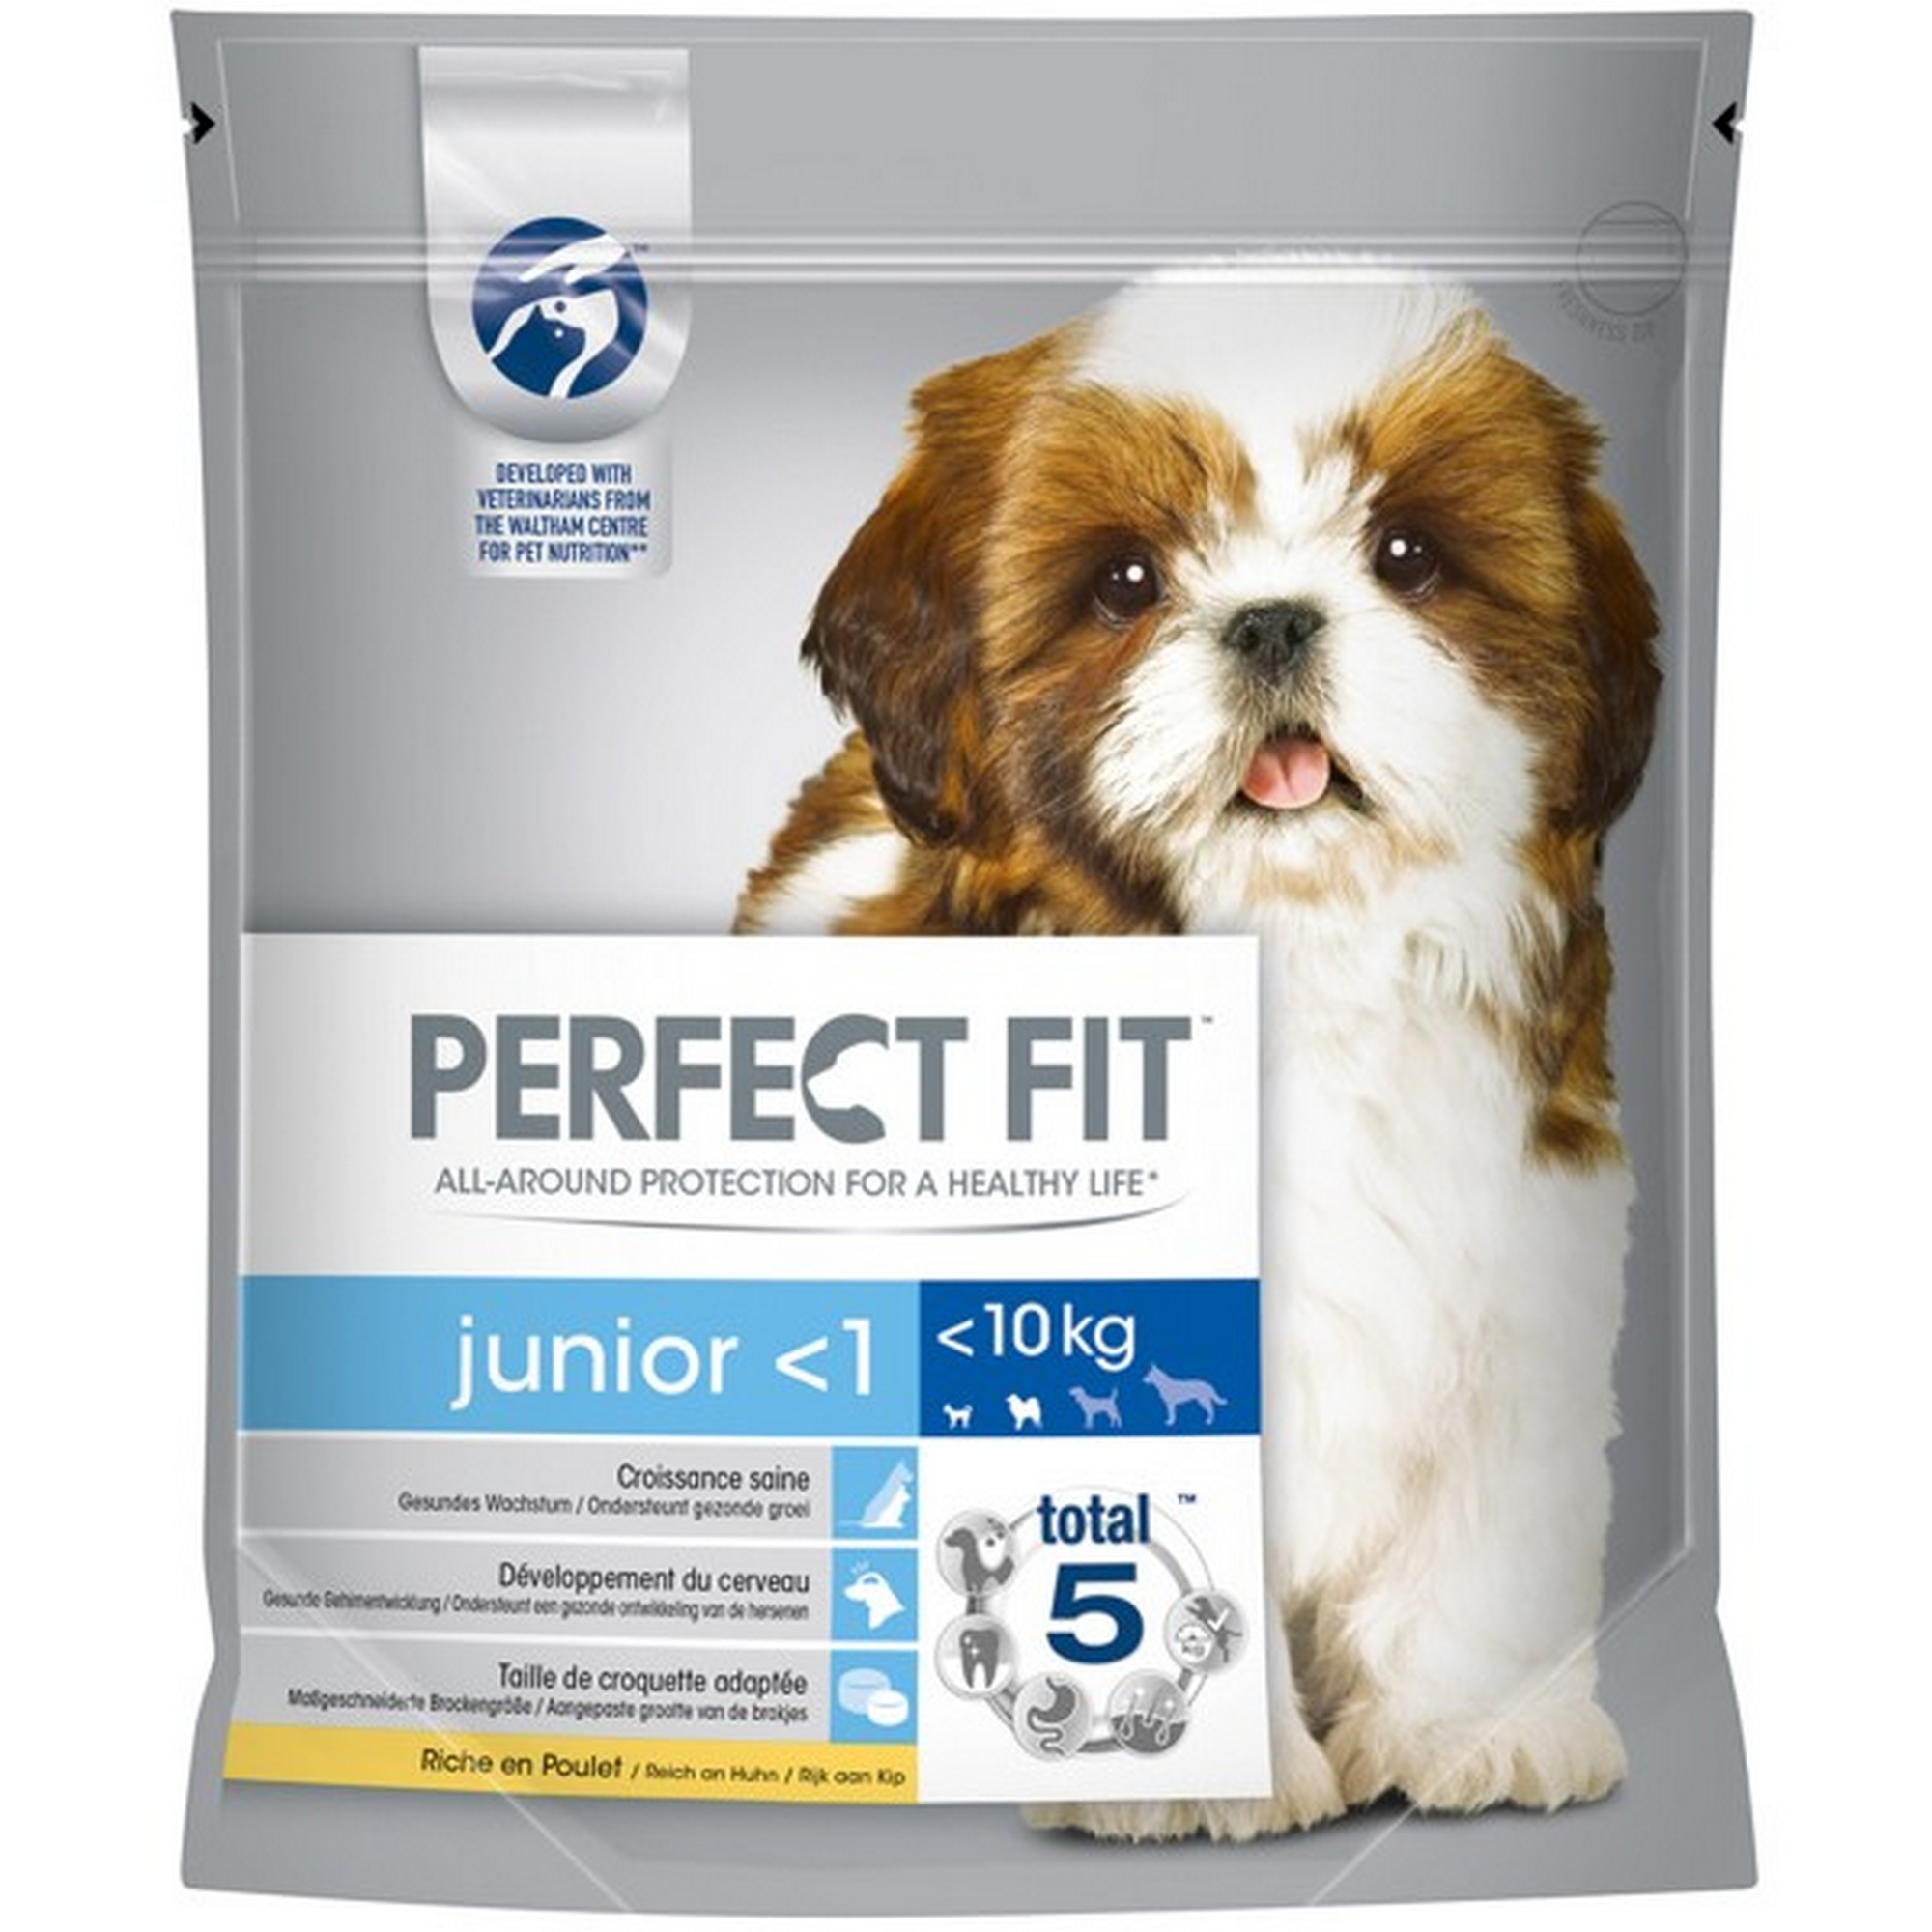 Hundetrockenfutter 'Junior -1' für kleine Hunde reich an Huhn 1,4 kg + product picture